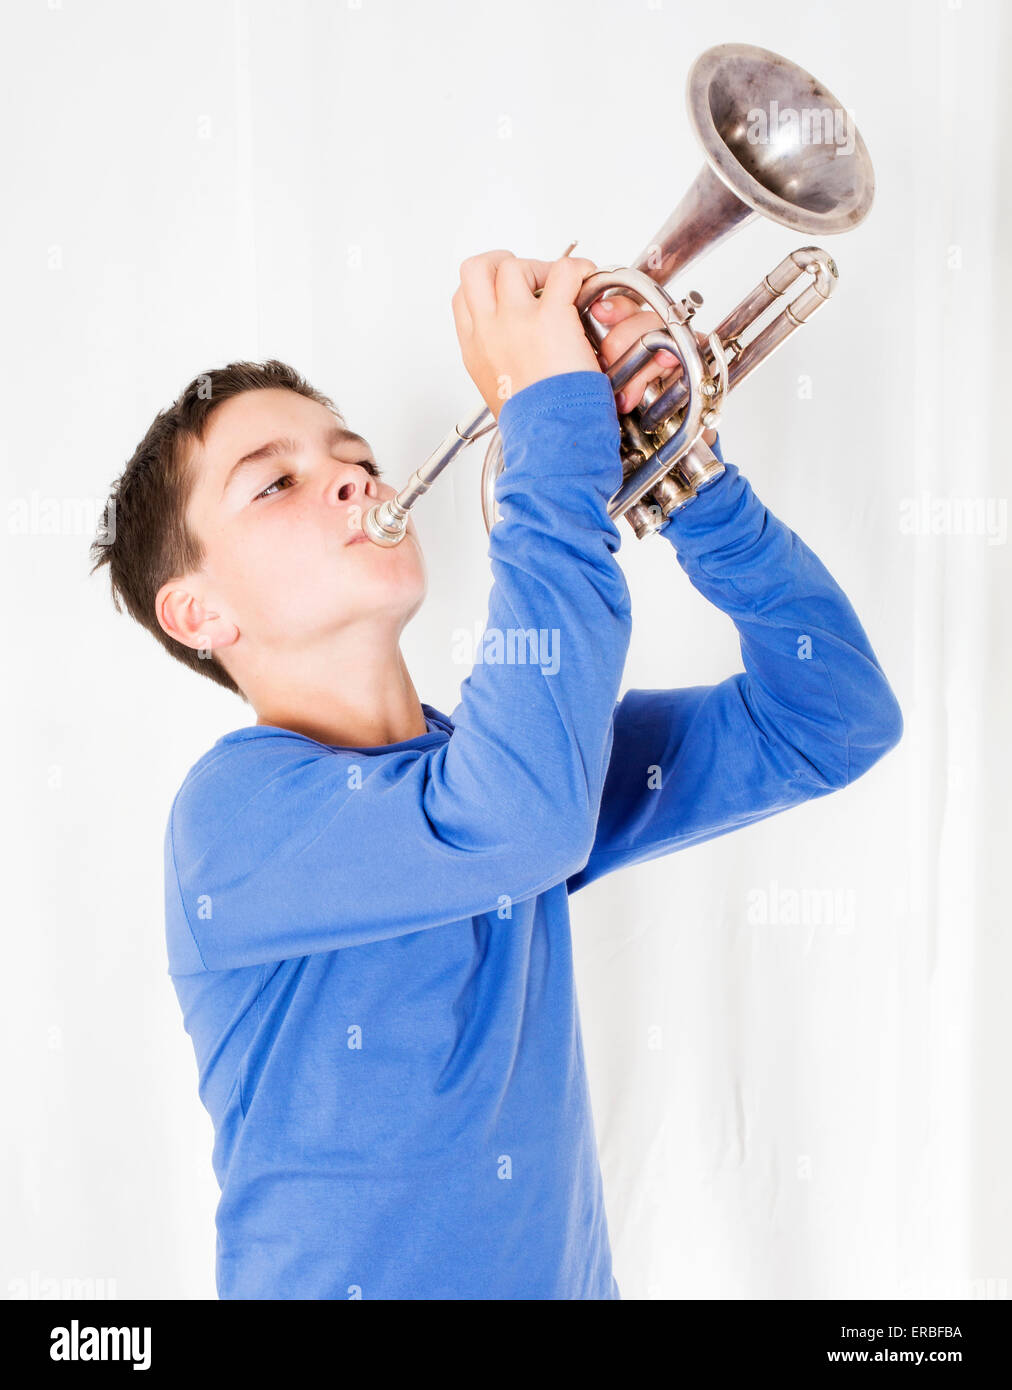 kid playing trumpet